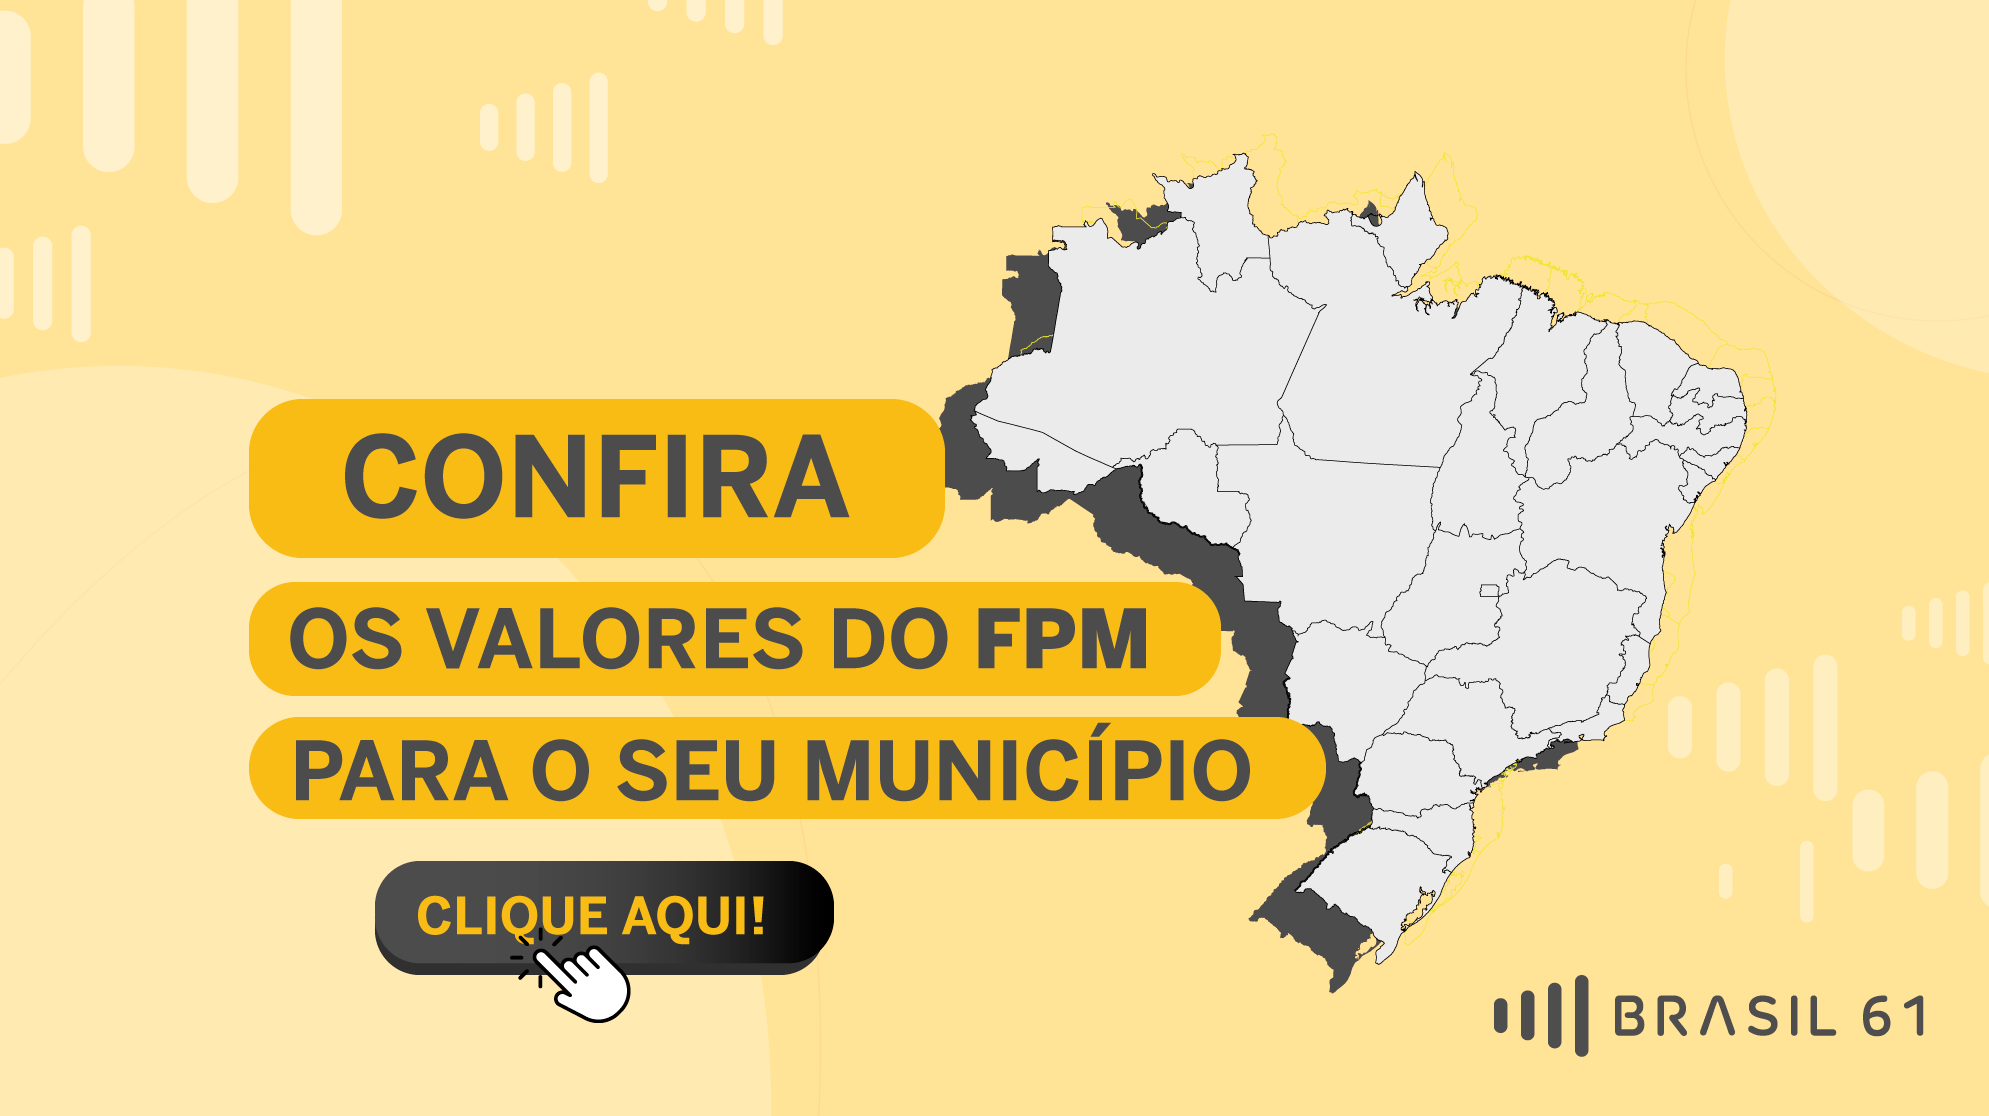 FPM municipios do Ceara recebem nesta quarta feira 10 mais de